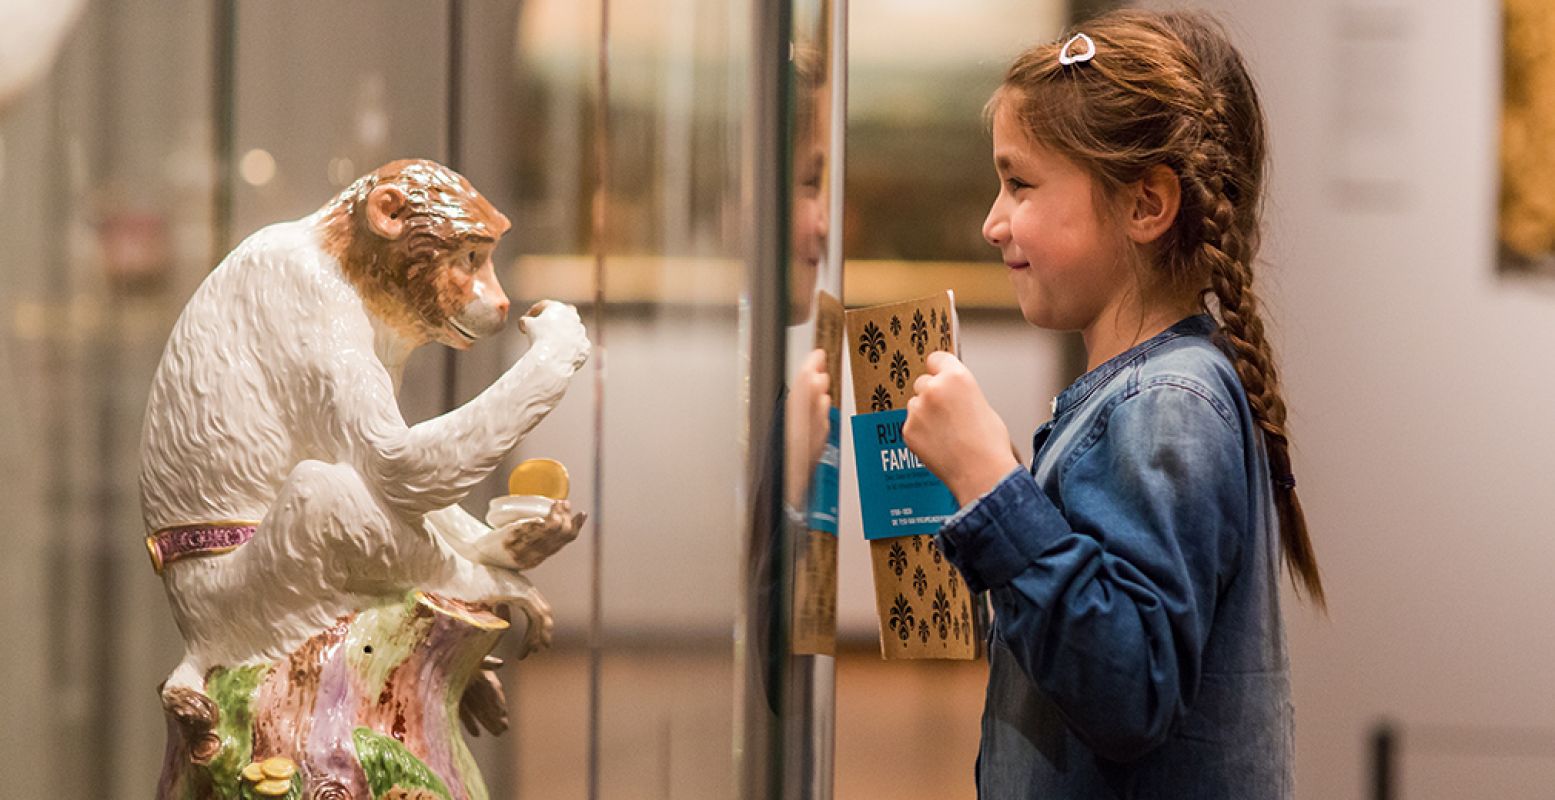 Boek tickets voor het Rijksmuseum en krijg er in de meivakantie een gratis Familiegids ter waarde van â‚¬ 10,- bij! Foto: Rijksmuseum © Floor Godefroy.